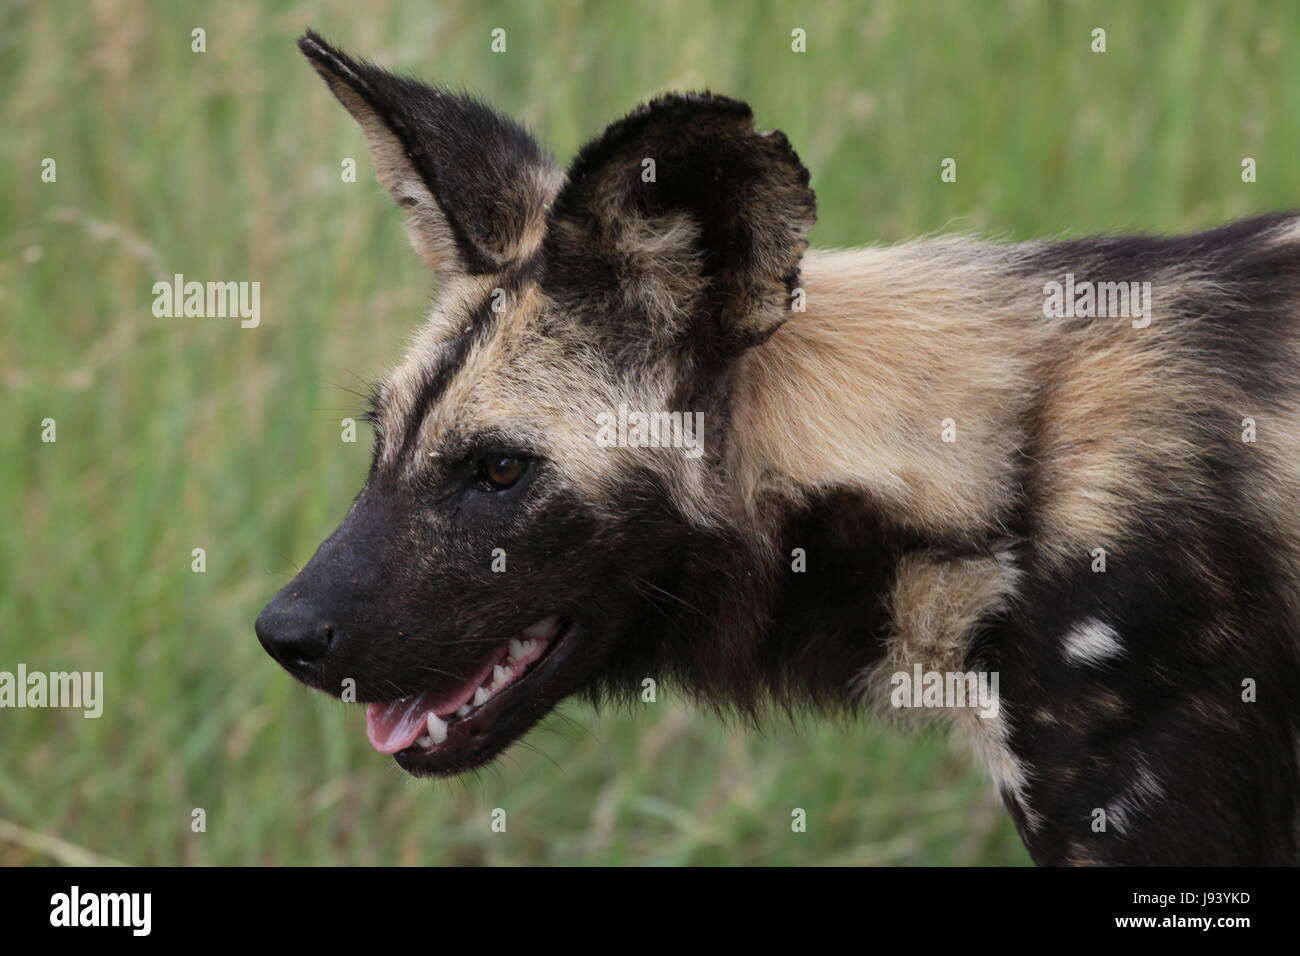 south africa, threatens, south africa, threatens, afrikanischer wildhund, Stock Photo